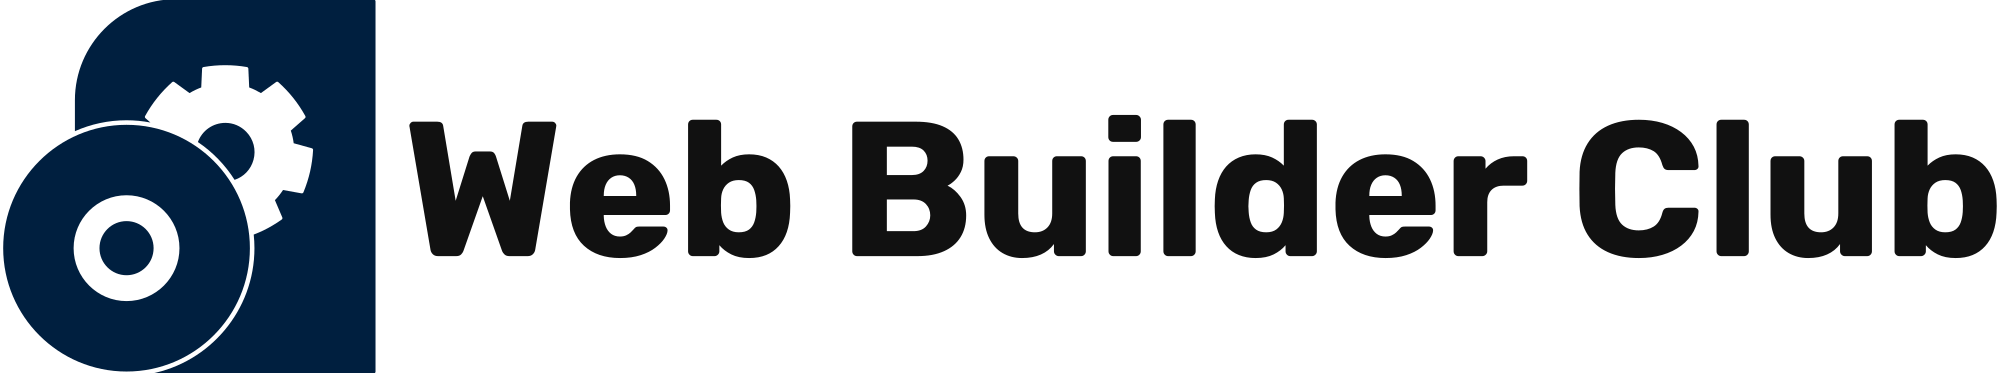 Web Builder Club